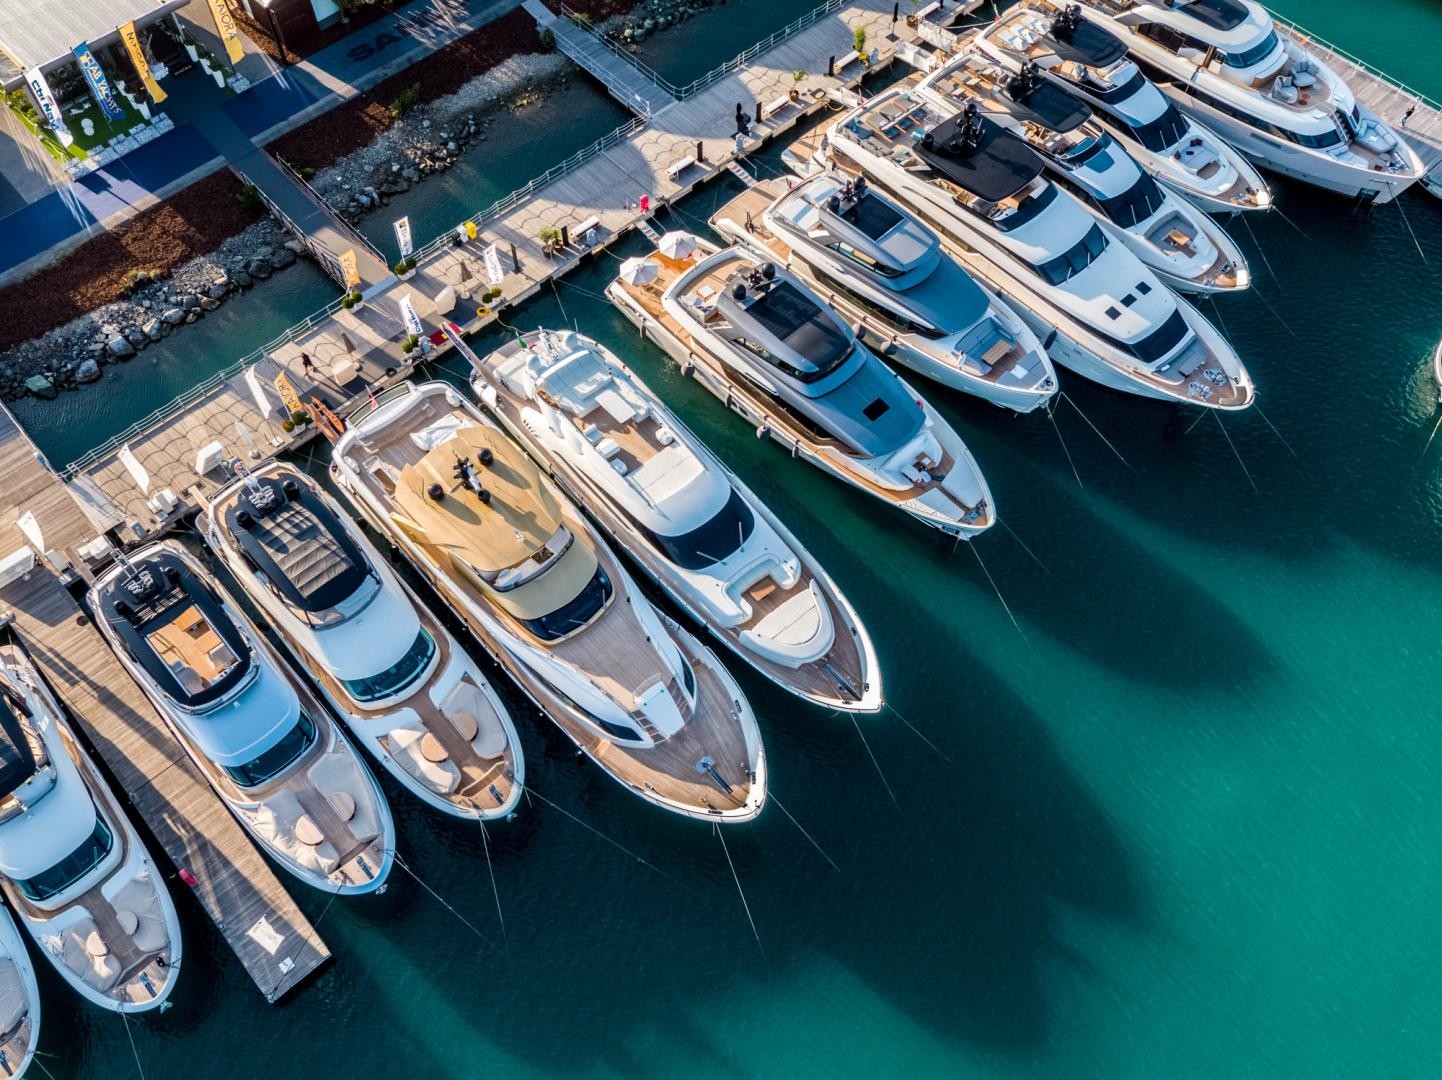 L'italia leader mondiale nella produzione di yacht sopra i 24 metri